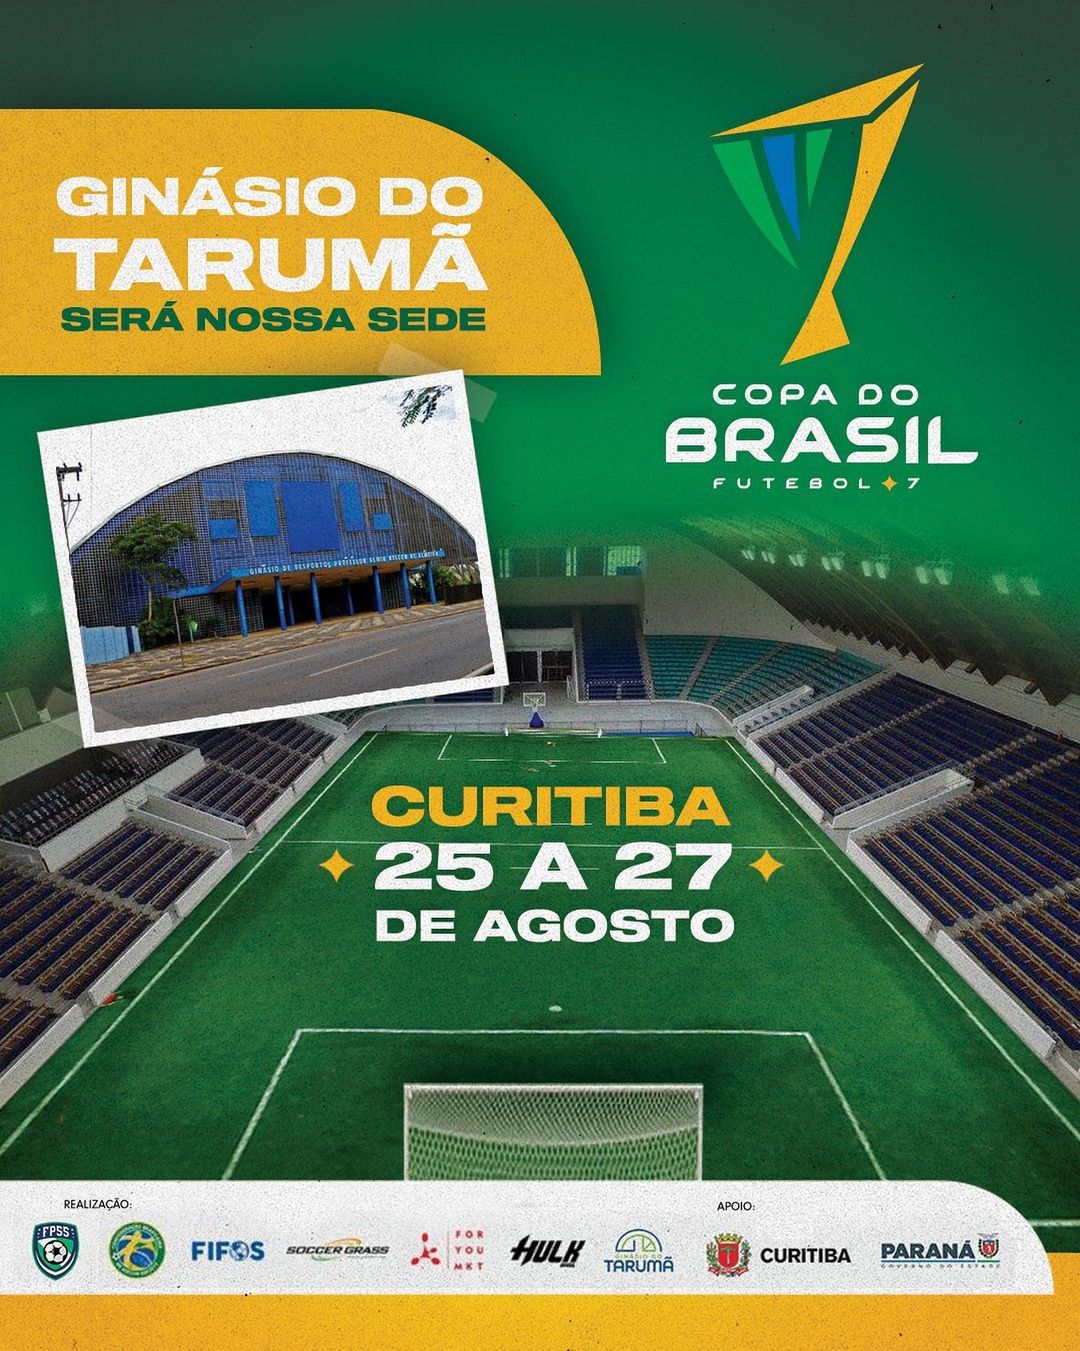 Confederaçao do Brasil de Futebol 7 Society